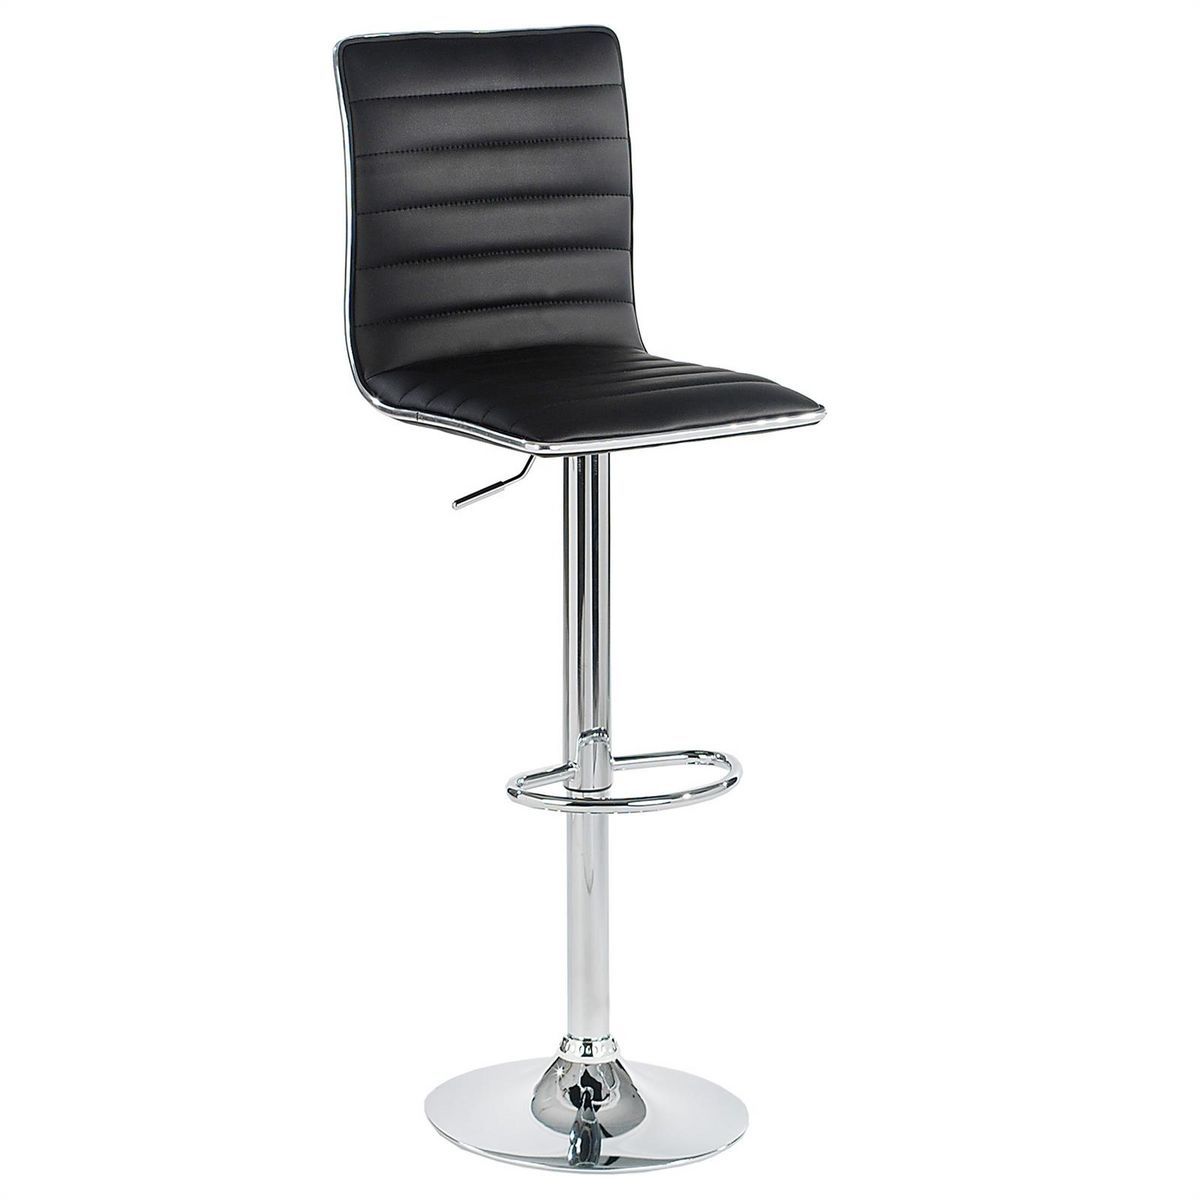 IDIMEX Lot de 2 tabourets de bar ROCA chaise haute droite pour cuisine/comptoir, réglable en hauteur et pivotante, en synthétique noir